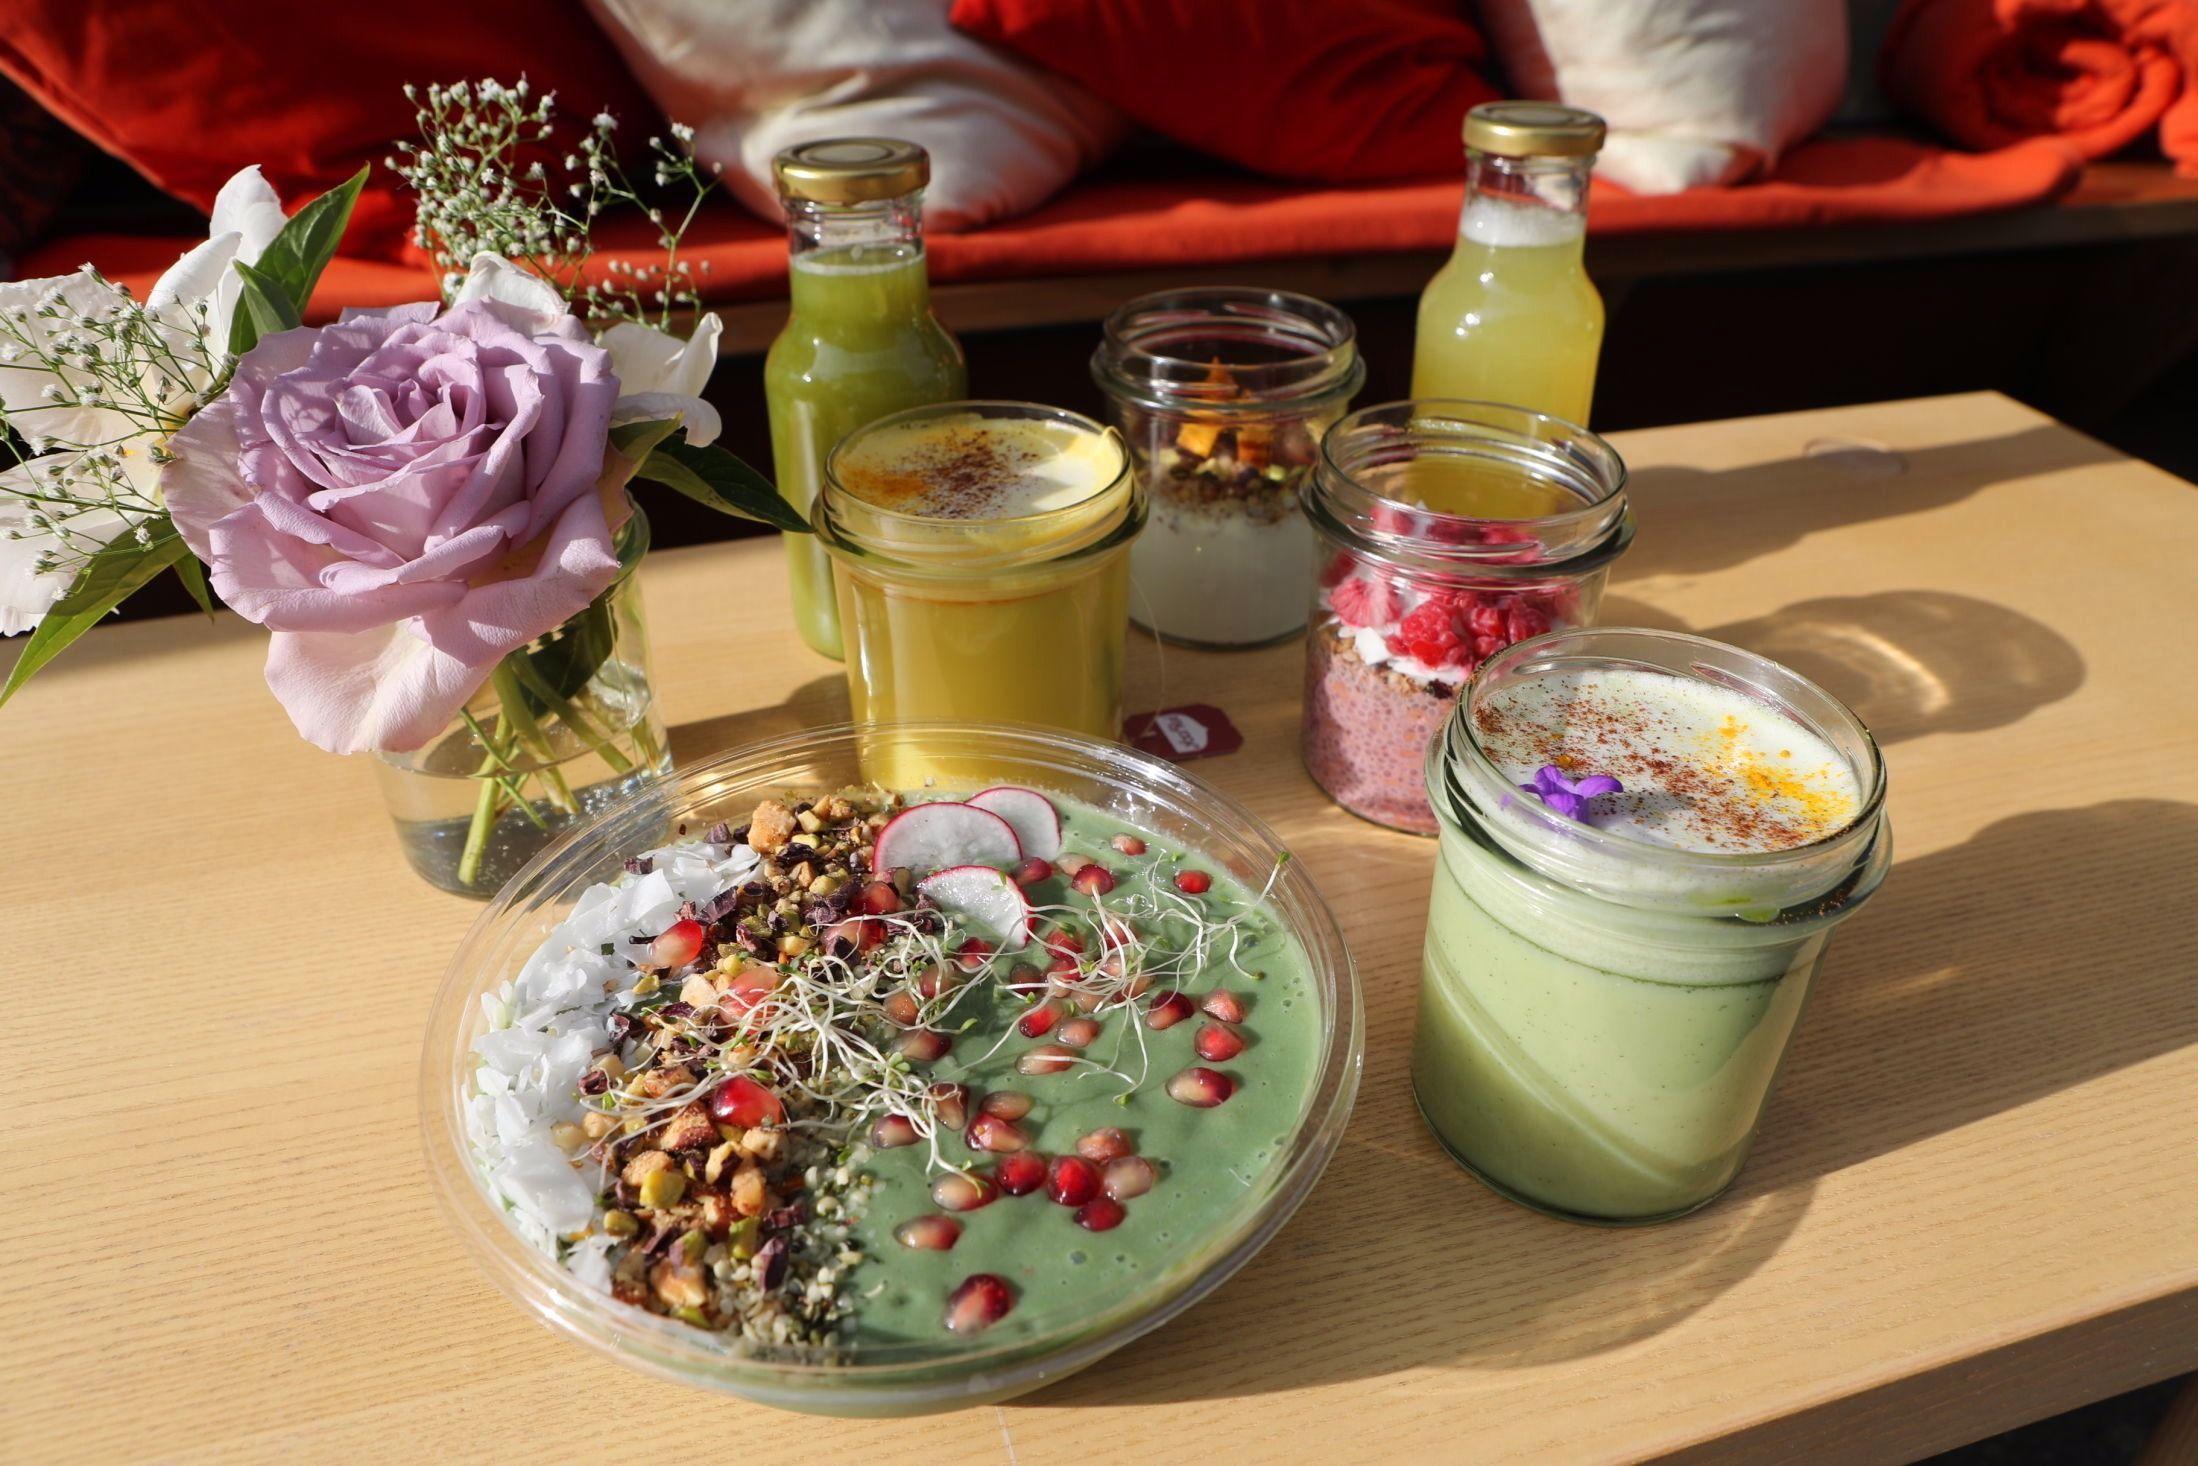 GRØNT: Smoothies, juicer og matcha. Det er grønne toner i maten. Foto: Sigrid Schei Lorentzen / VG.